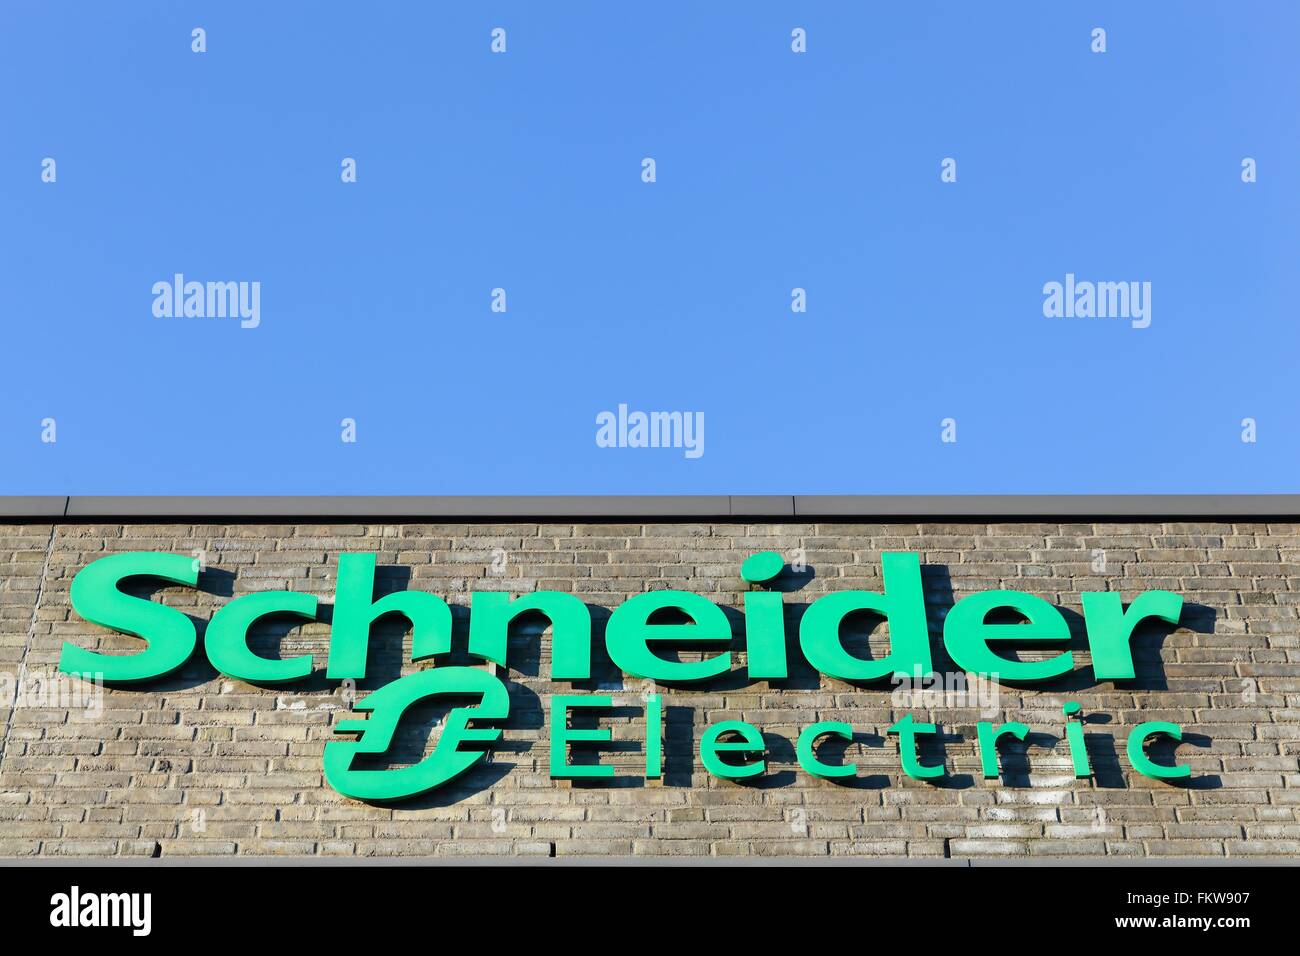 Schneider Electric logo on a facade Stock Photo